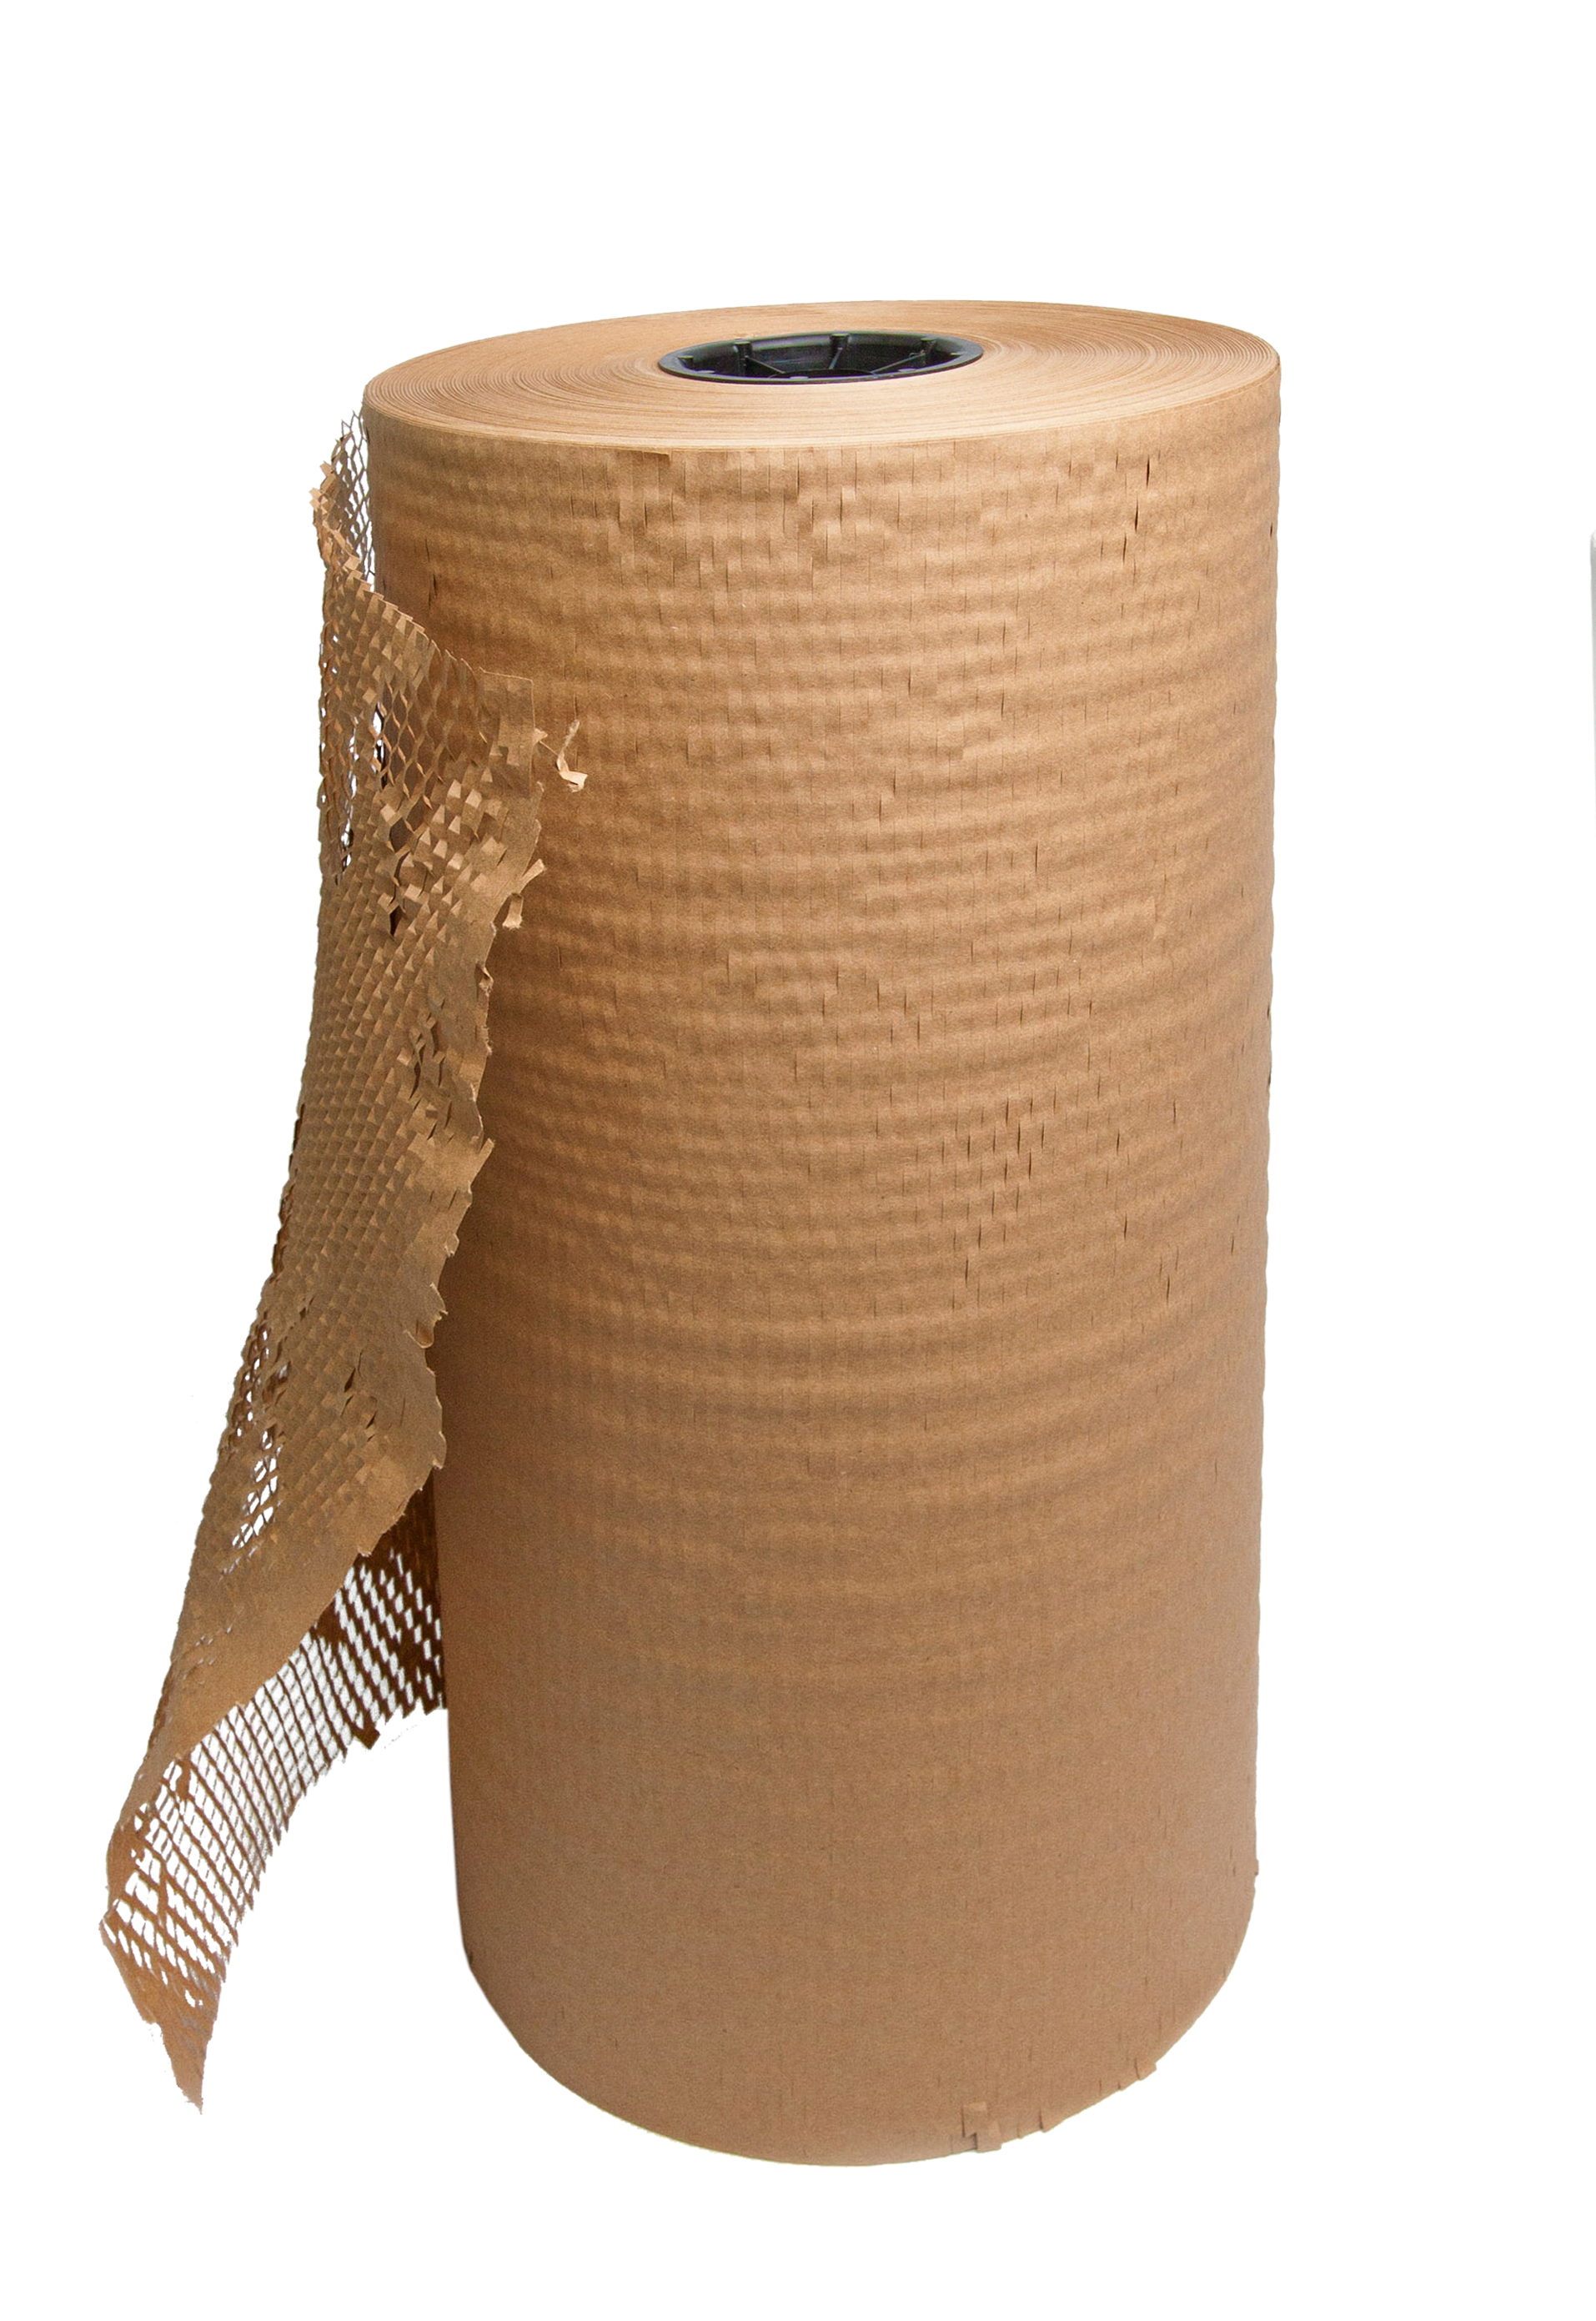 brown paper packaging roll